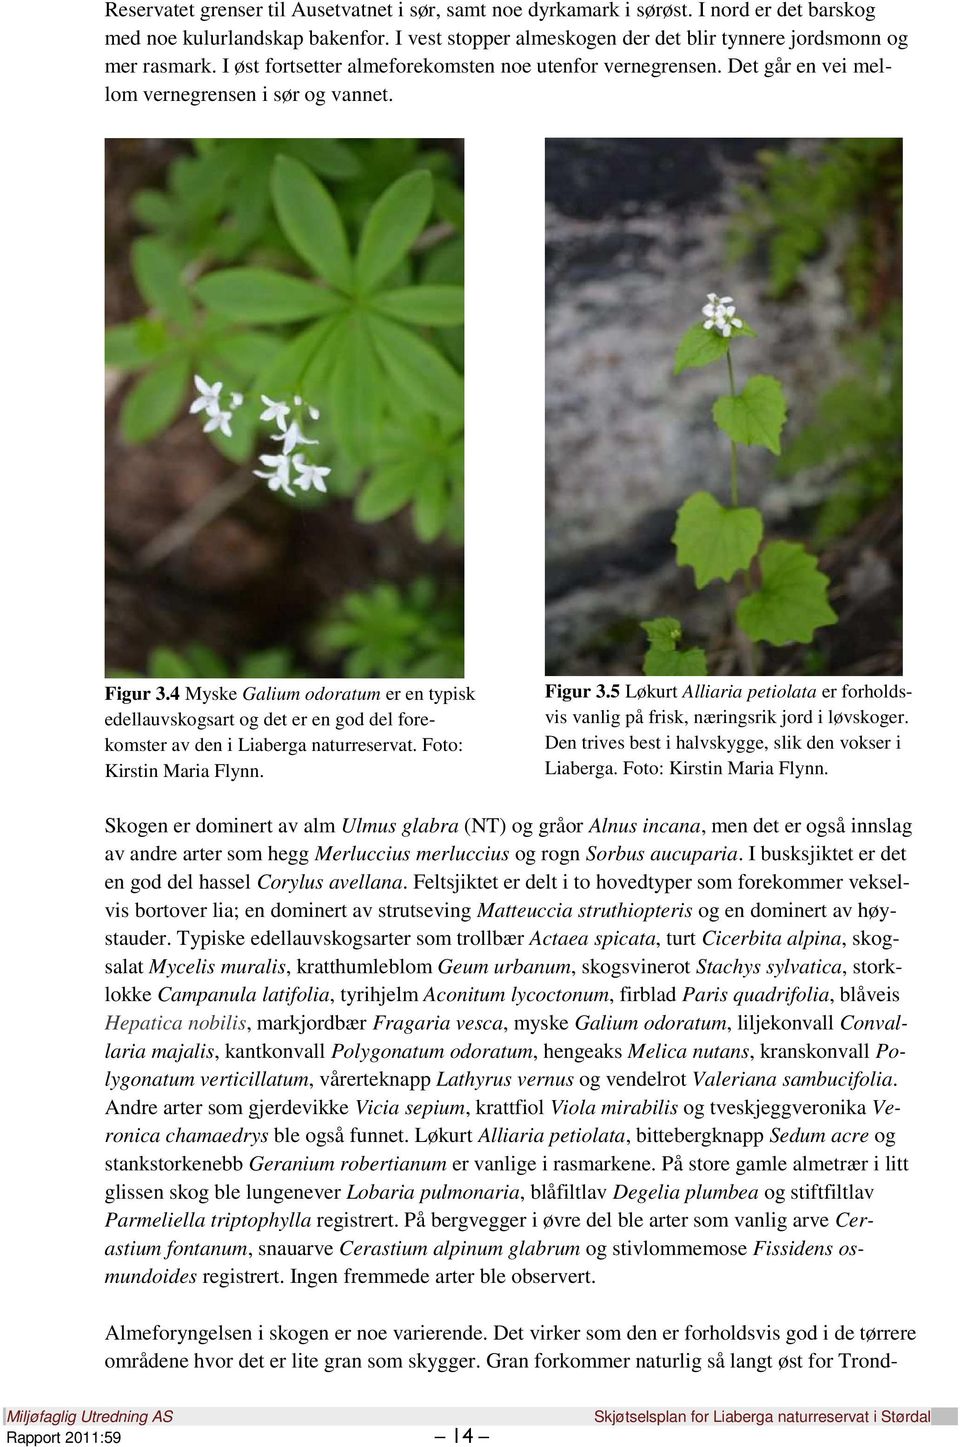 4 Myske Galium odoratum er en typisk edellauvskogsart og det er en god del forekomster av den i Liaberga naturreservat. Foto: Kirstin Maria Flynn. Figur 3.